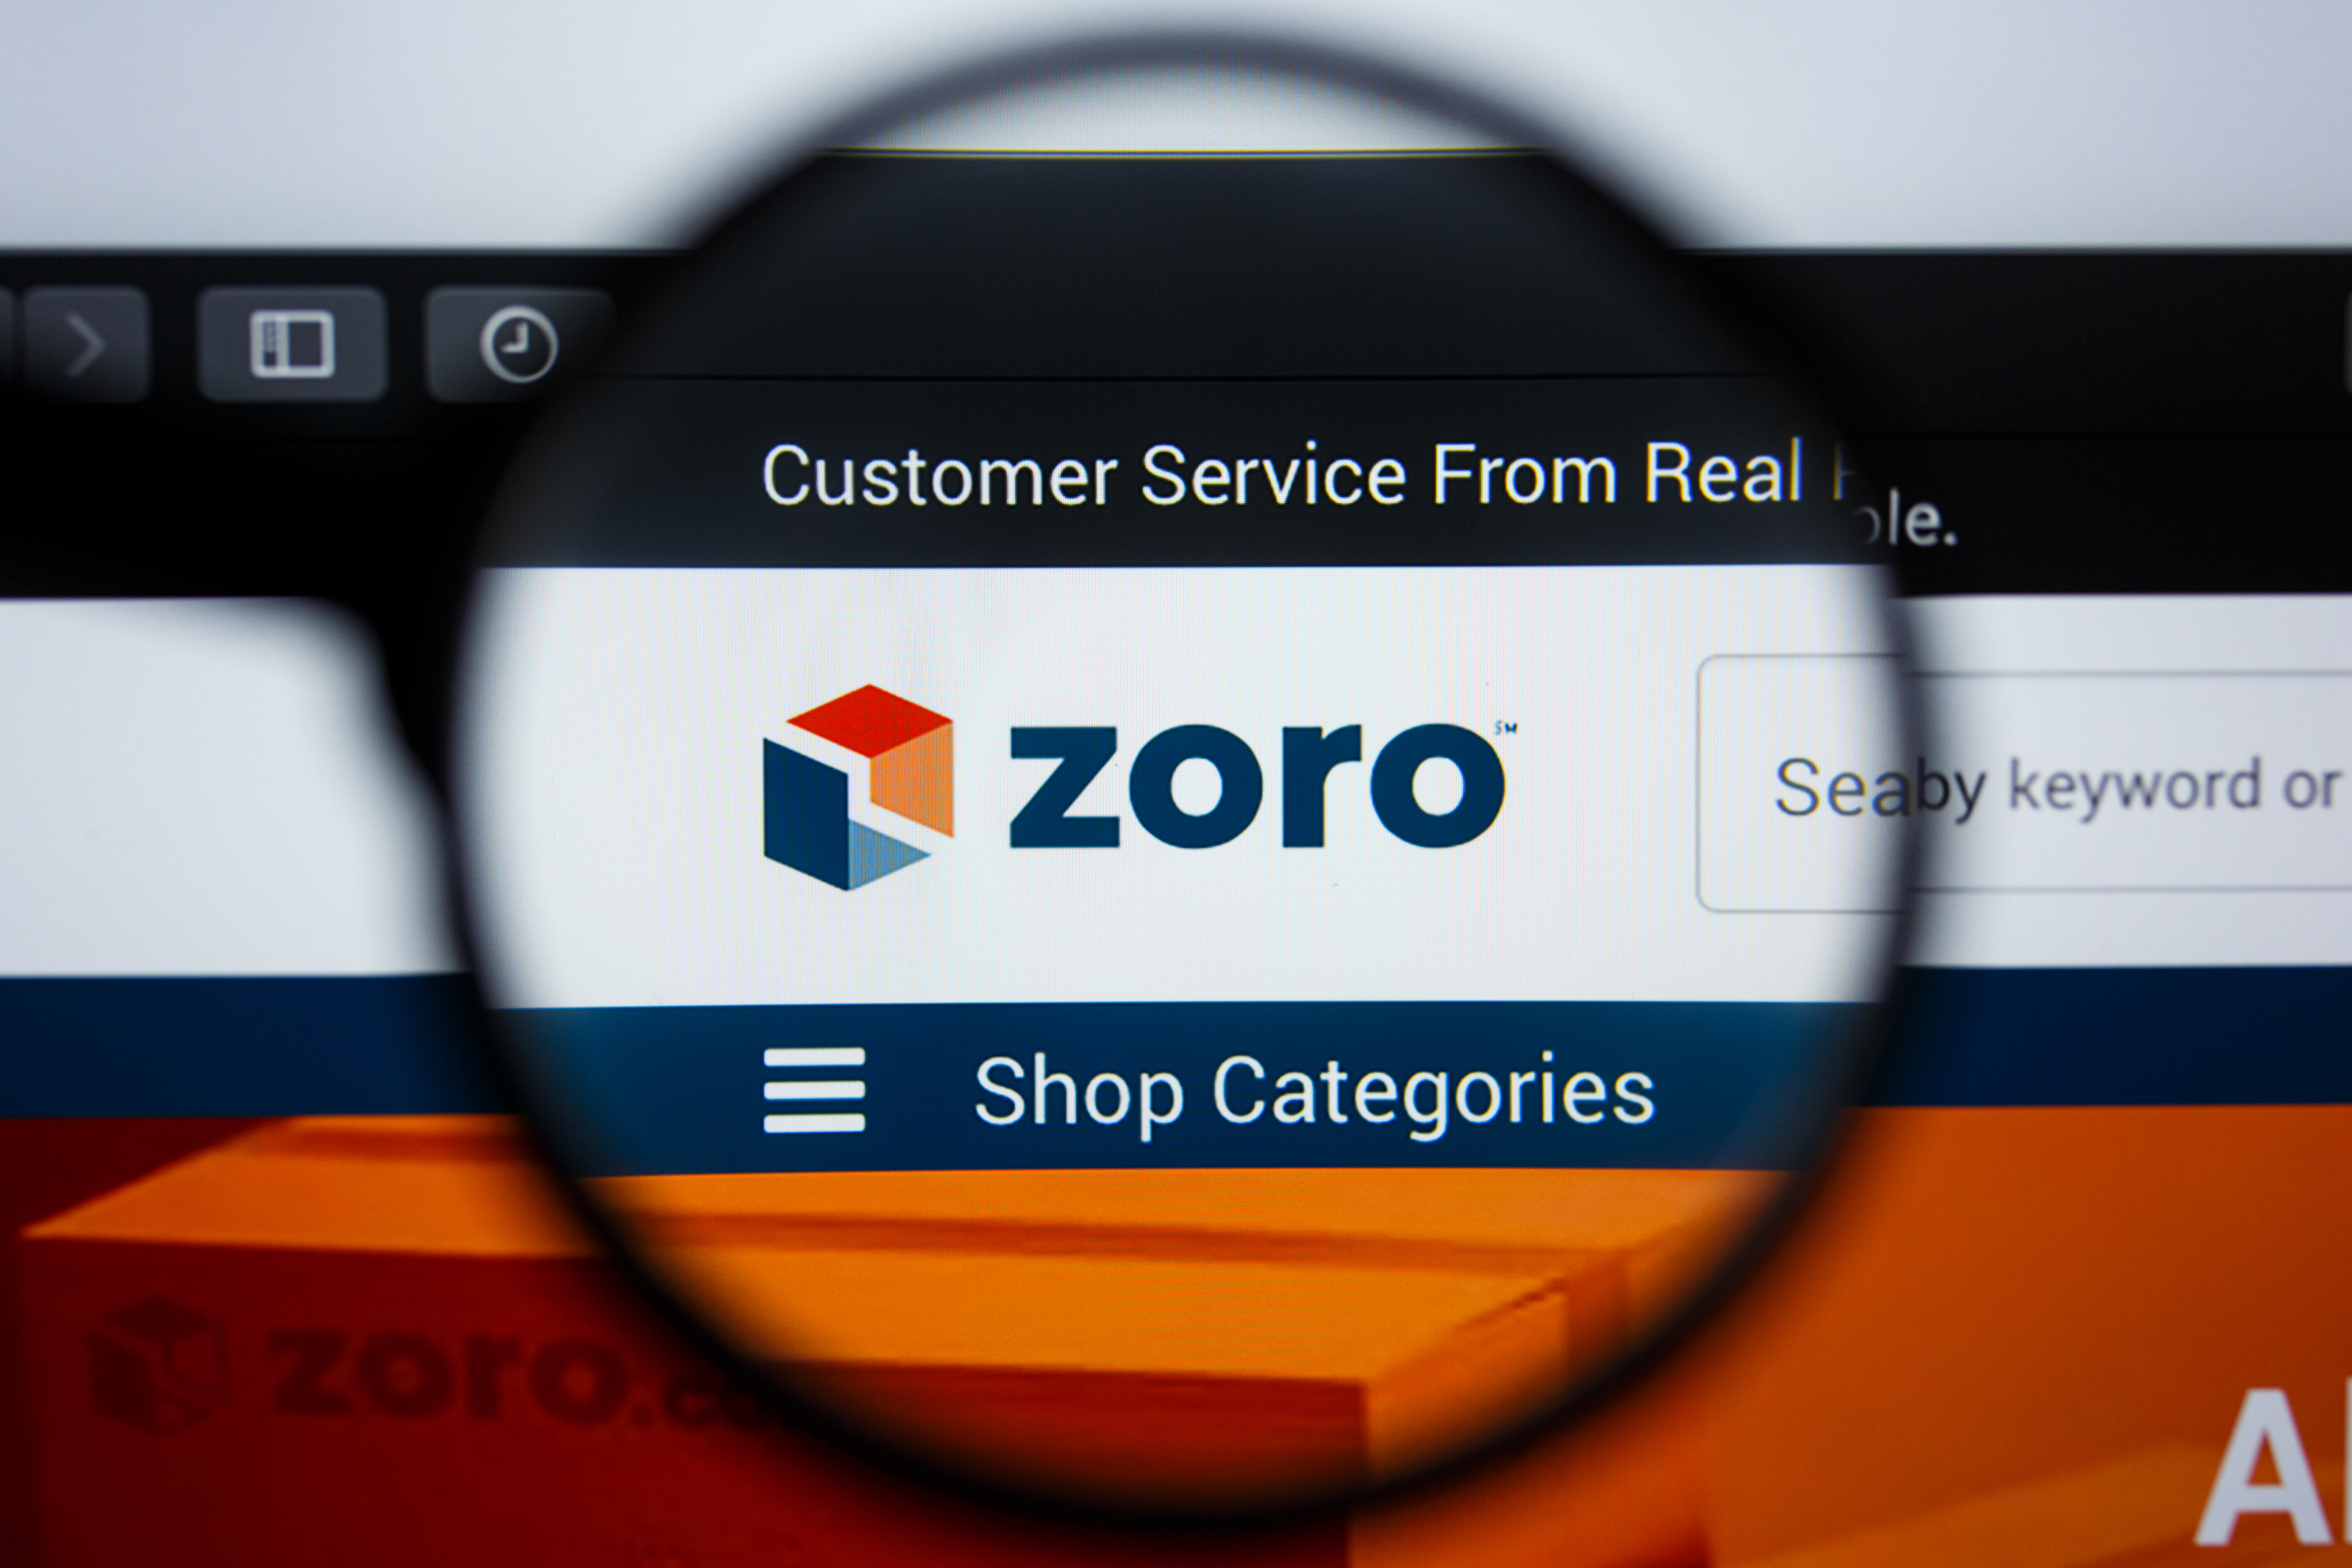 Zoro's company website logo.